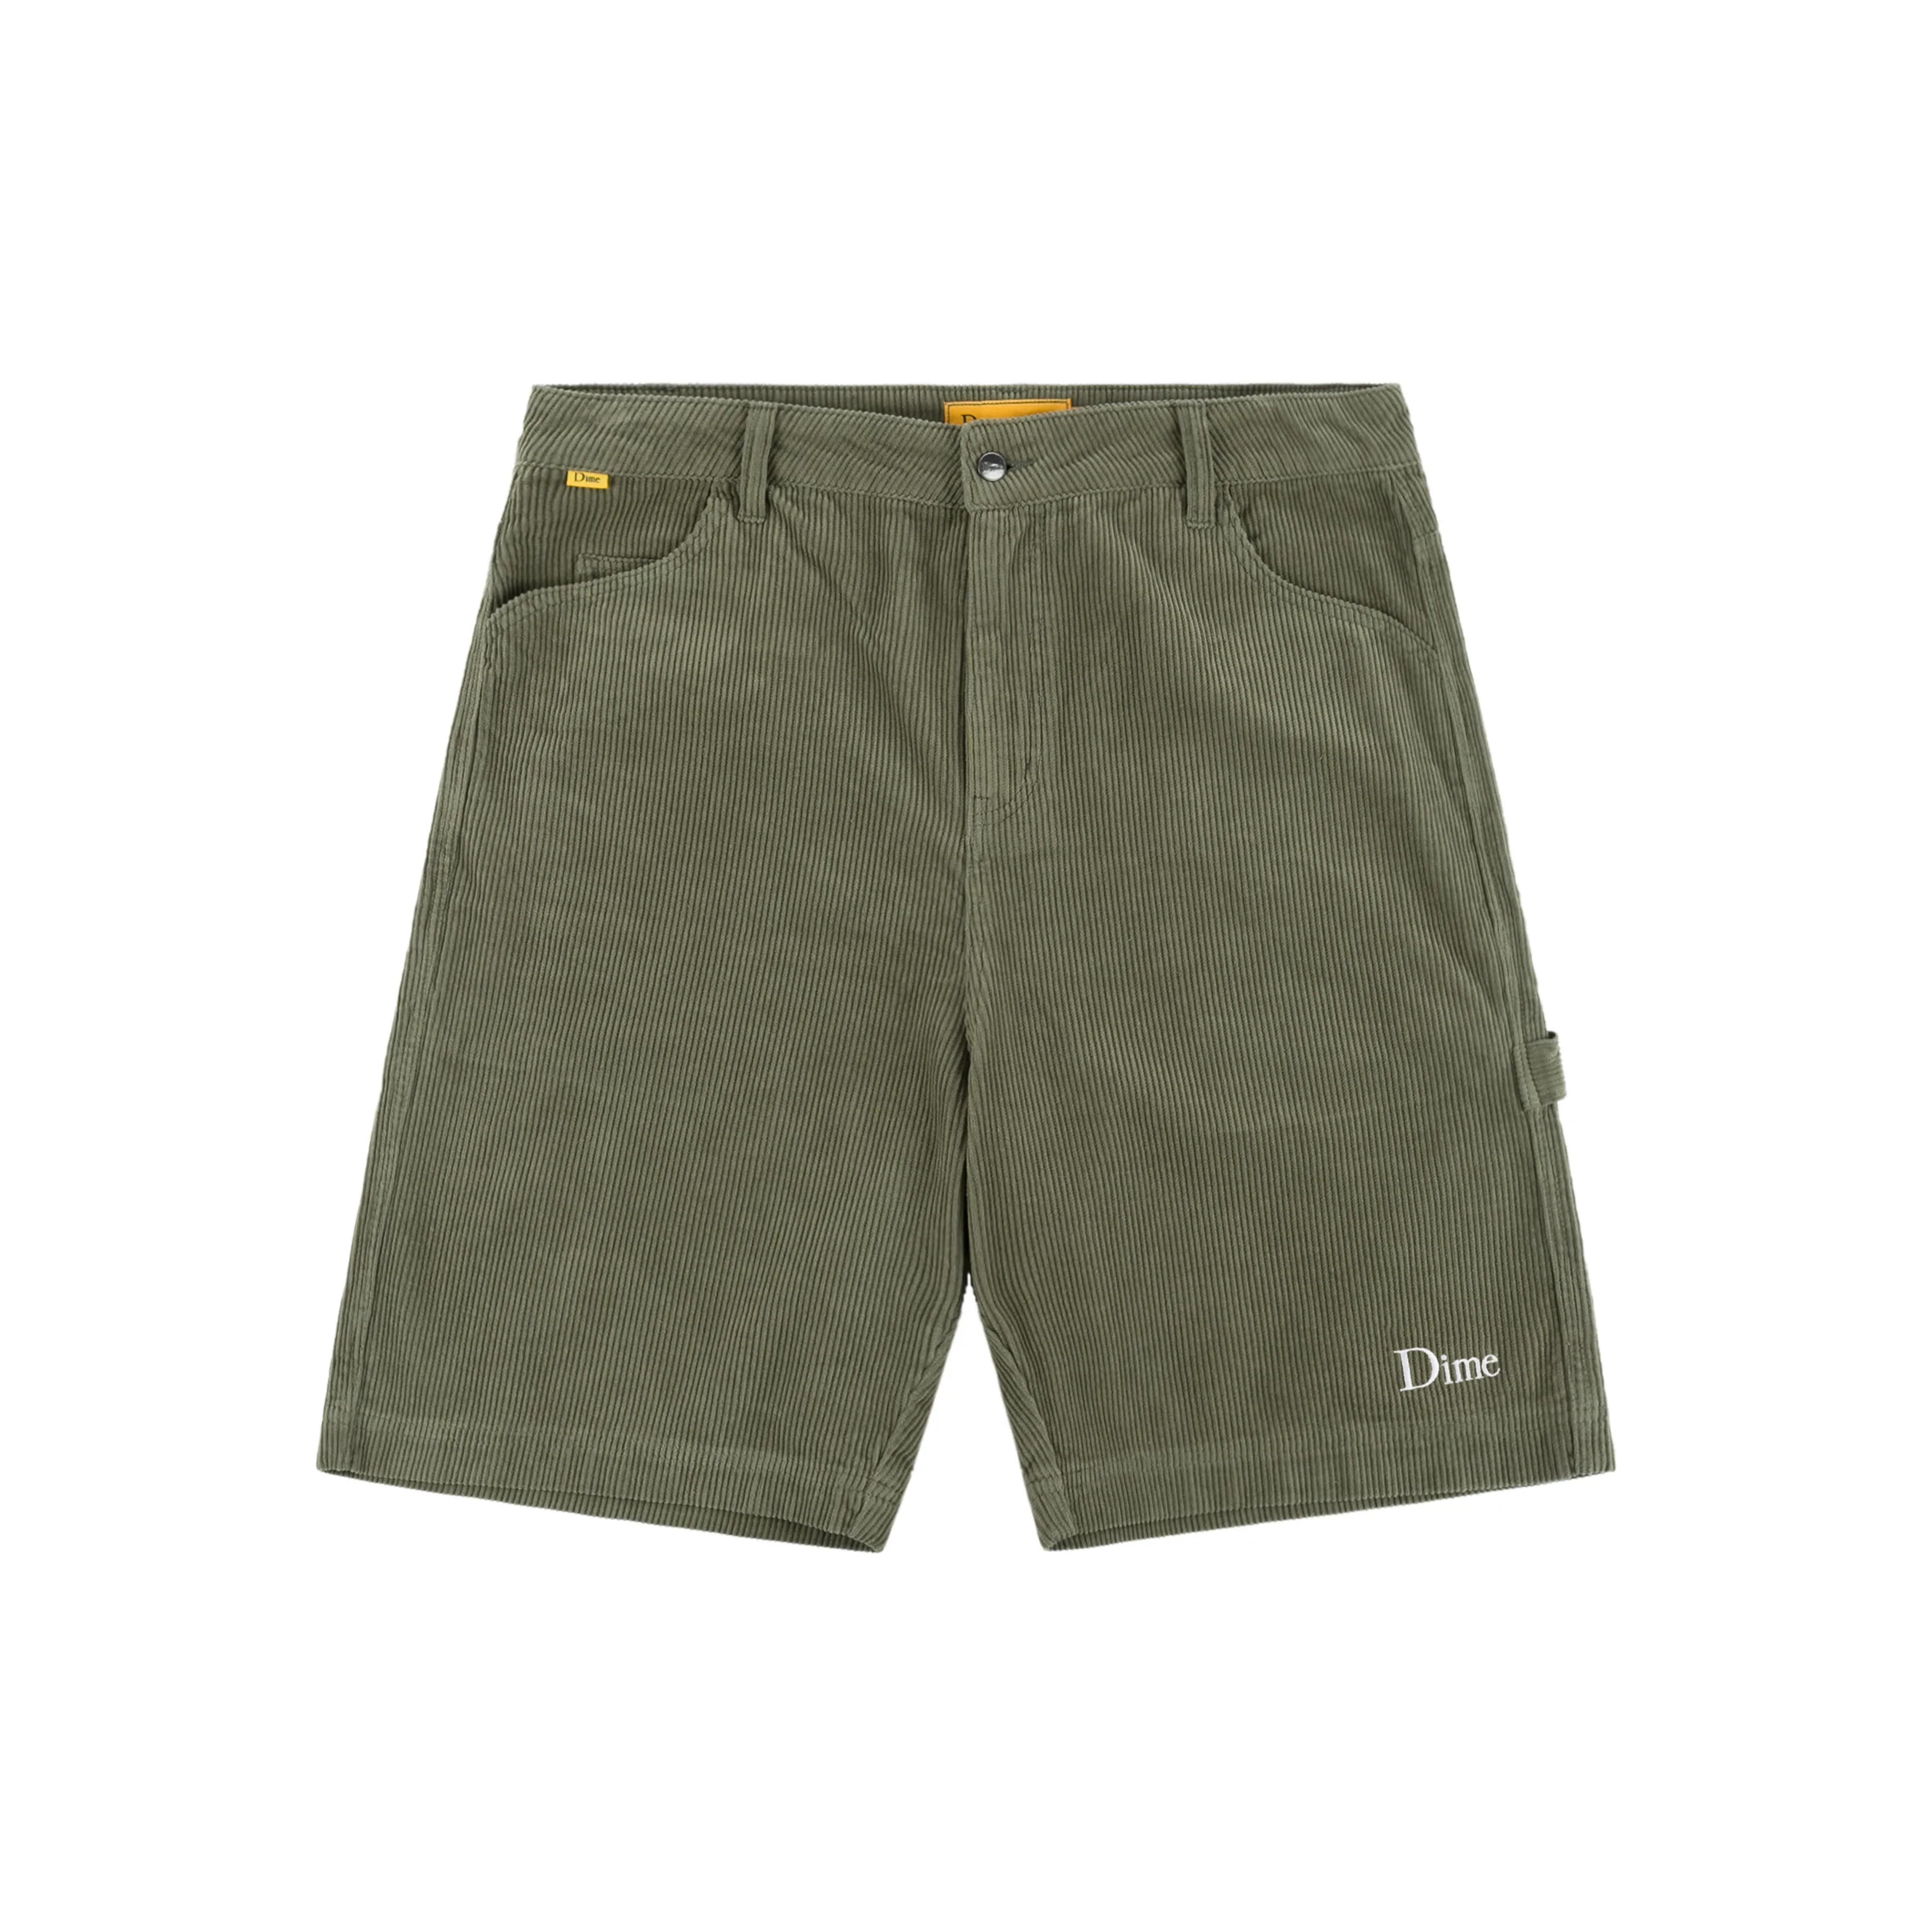 Corduroy Shorts - Olive - Large